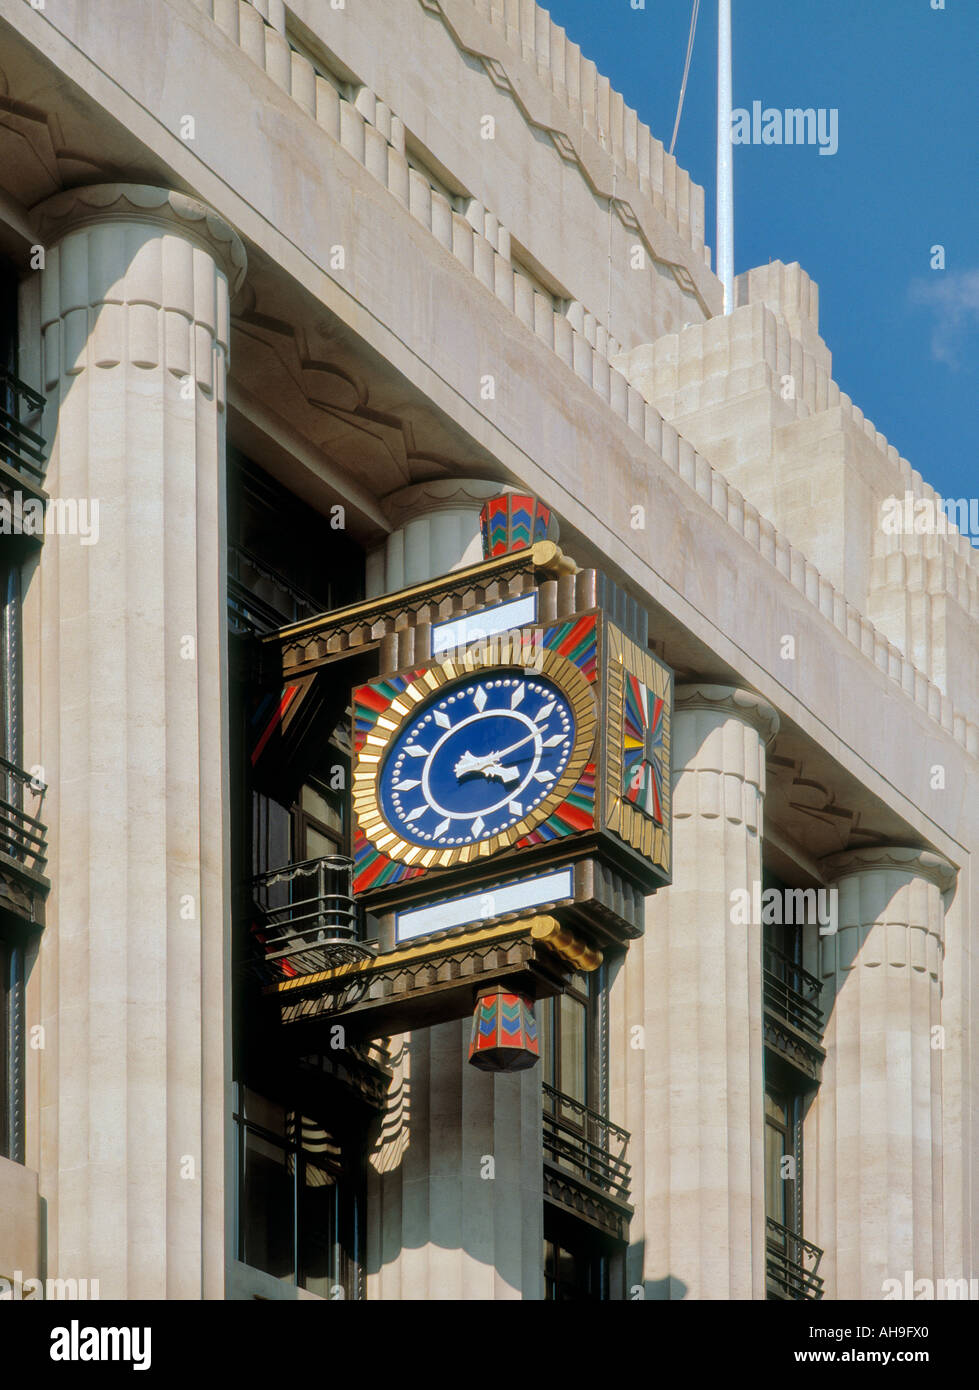 Détail architectural - l'horloge de l'ancien bâtiment du Daily Telegraph dans Fleet Street Londres Banque D'Images